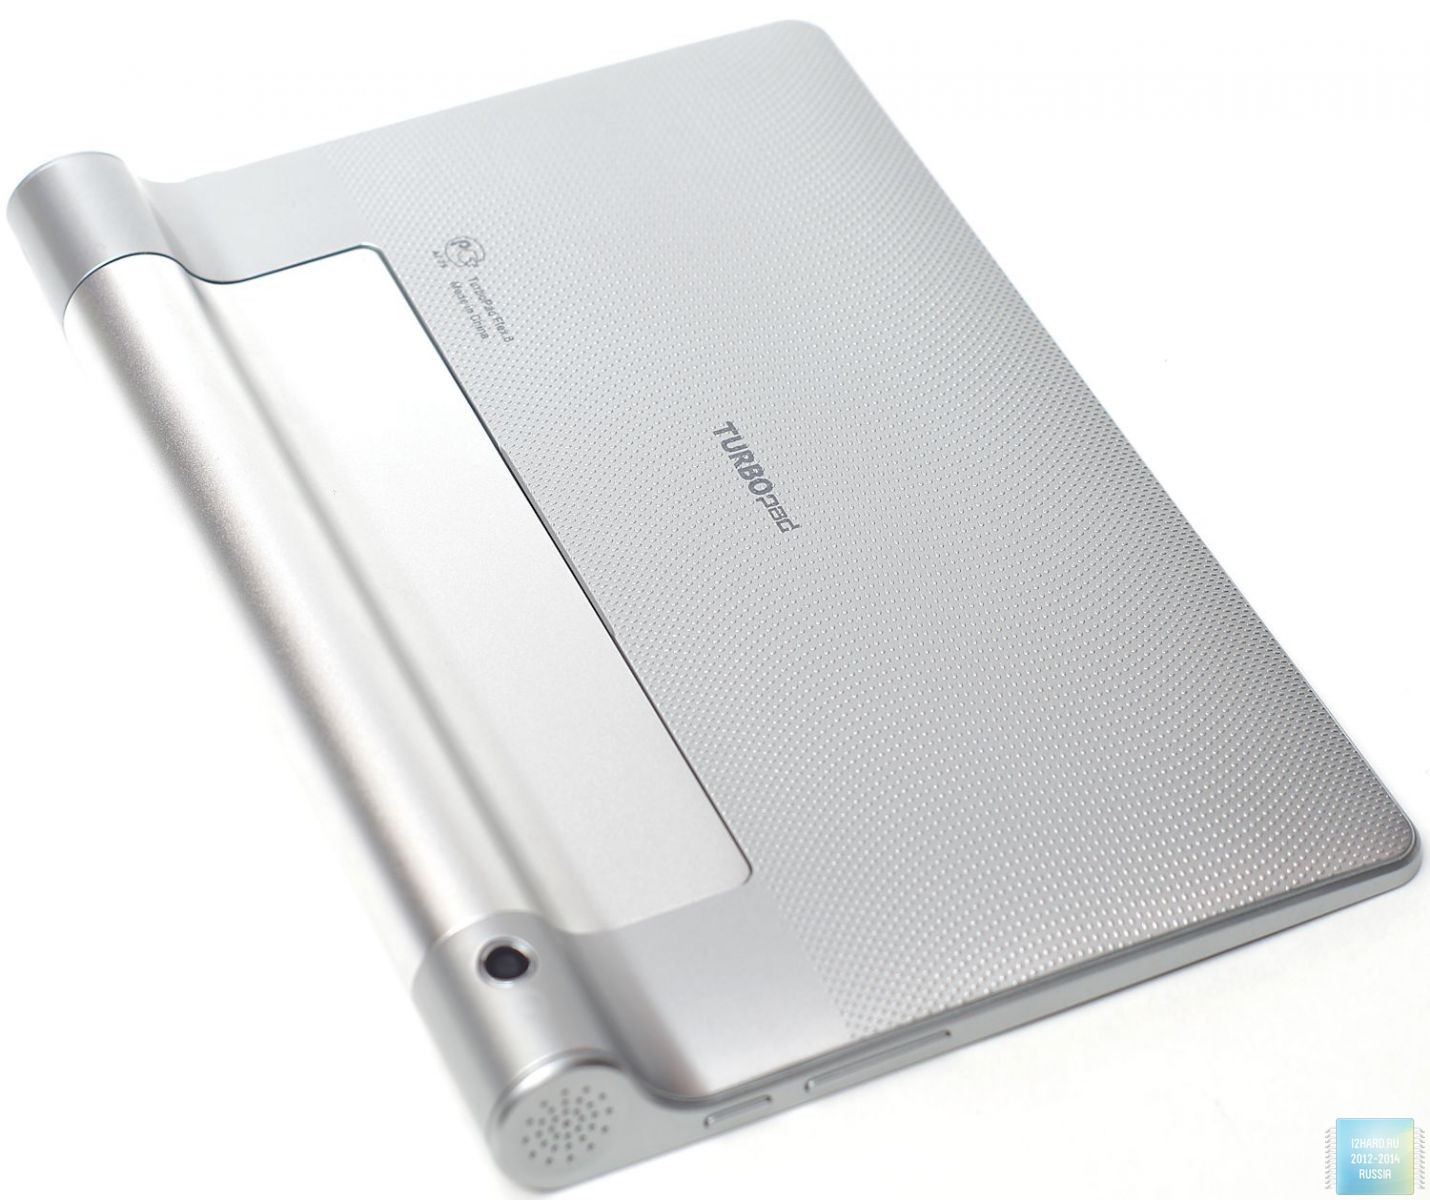 Внешний вид 8" планшета TurboPad Flex 8